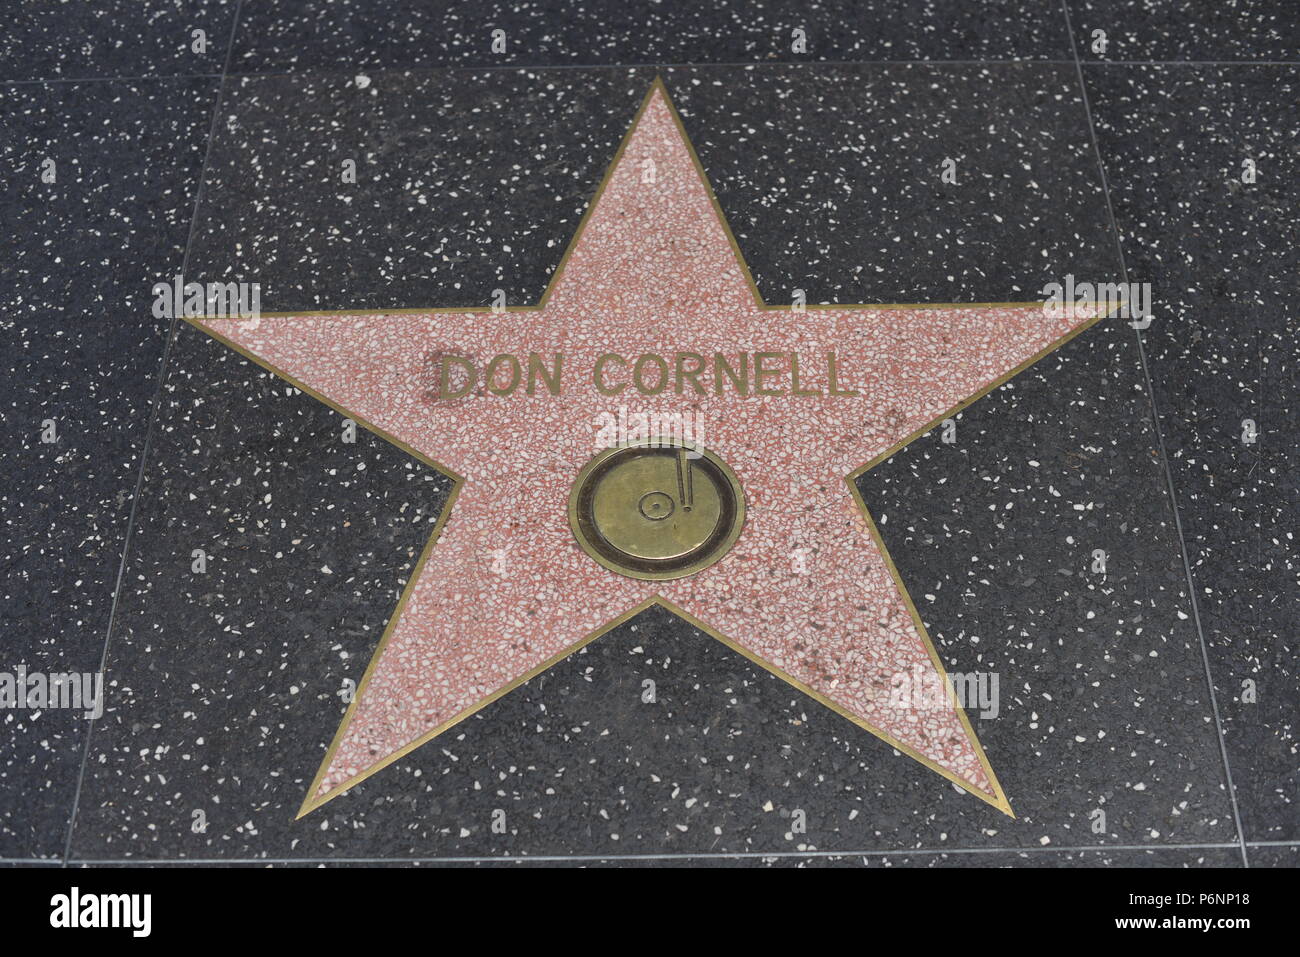 HOLLYWOOD, CA - 29 Giugno: Don Cornell stella sulla Hollywood Walk of Fame in Hollywood, la California il 29 giugno 2018. Foto Stock